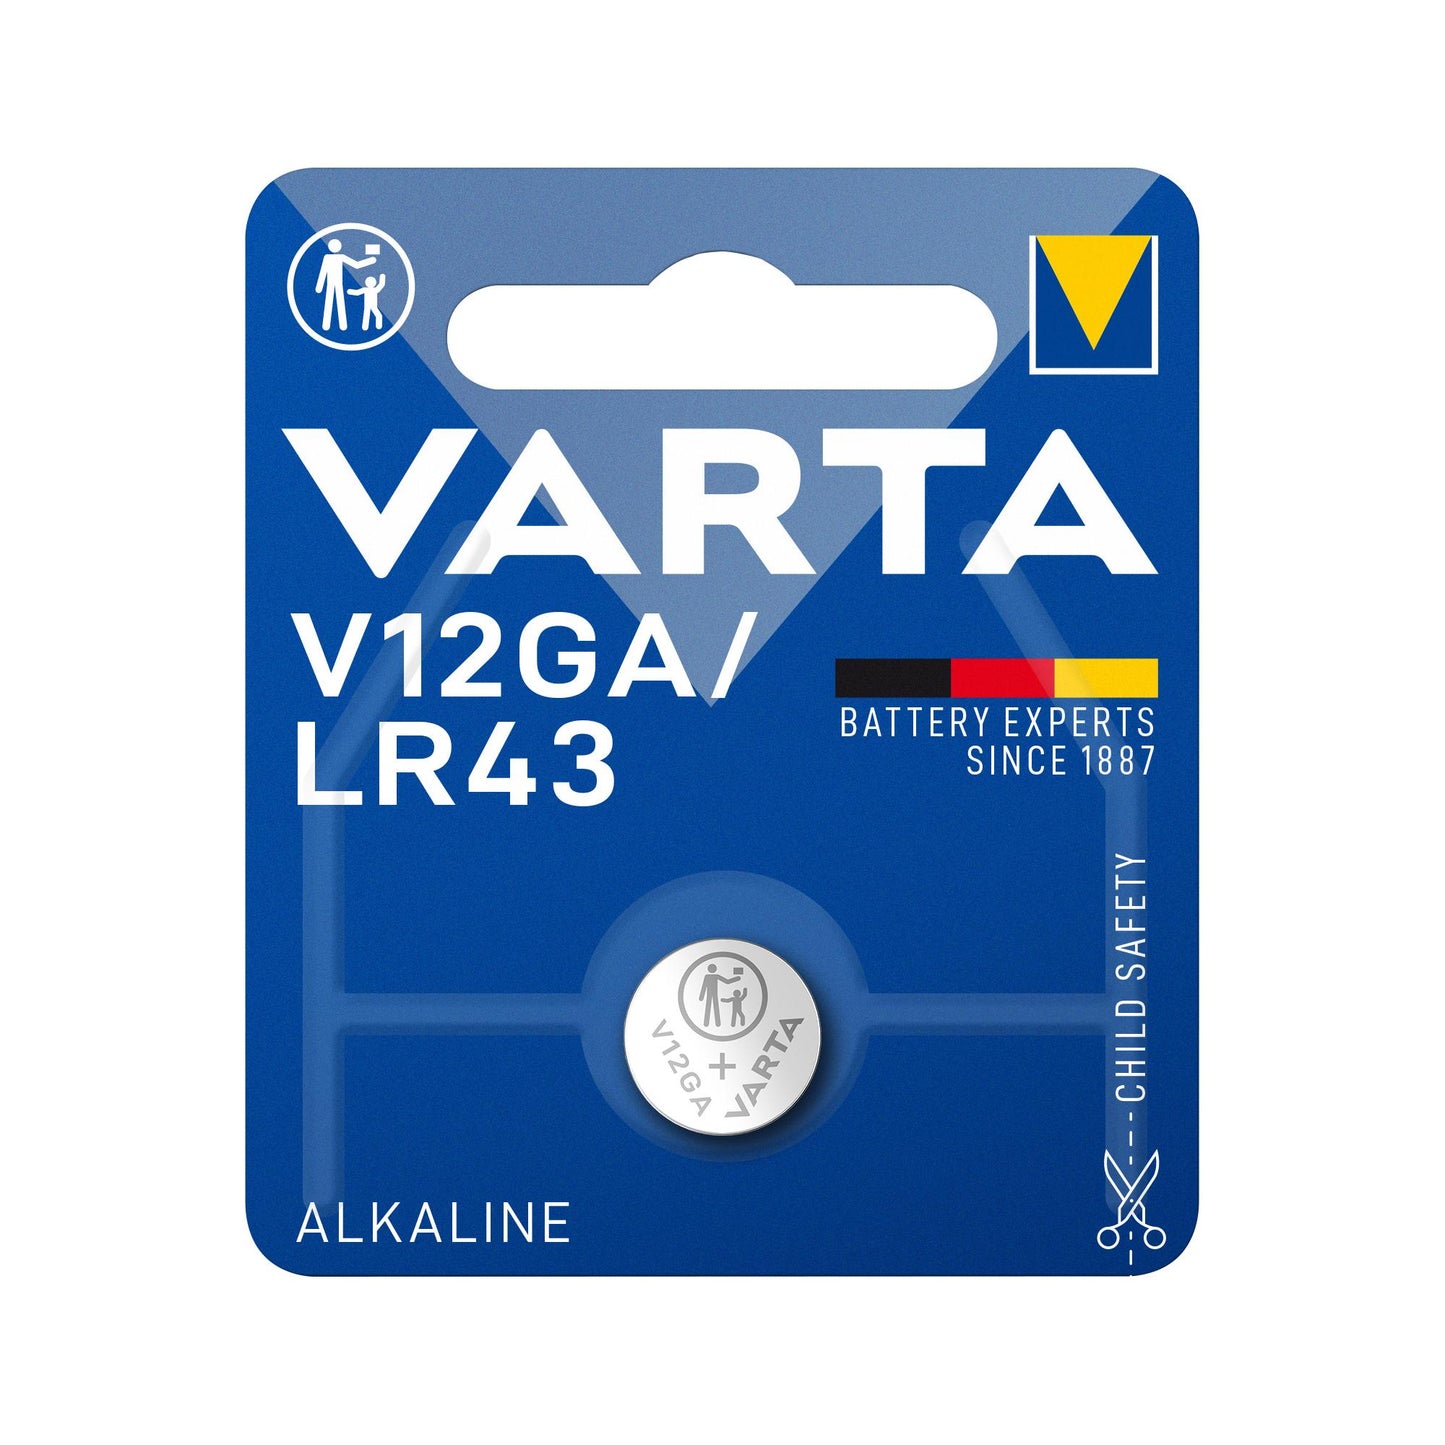 VARTA Batterie Alkaline Knopfzelle LR43, V12GA, 1.5V Electronics, Retail Blister (1-Pack)